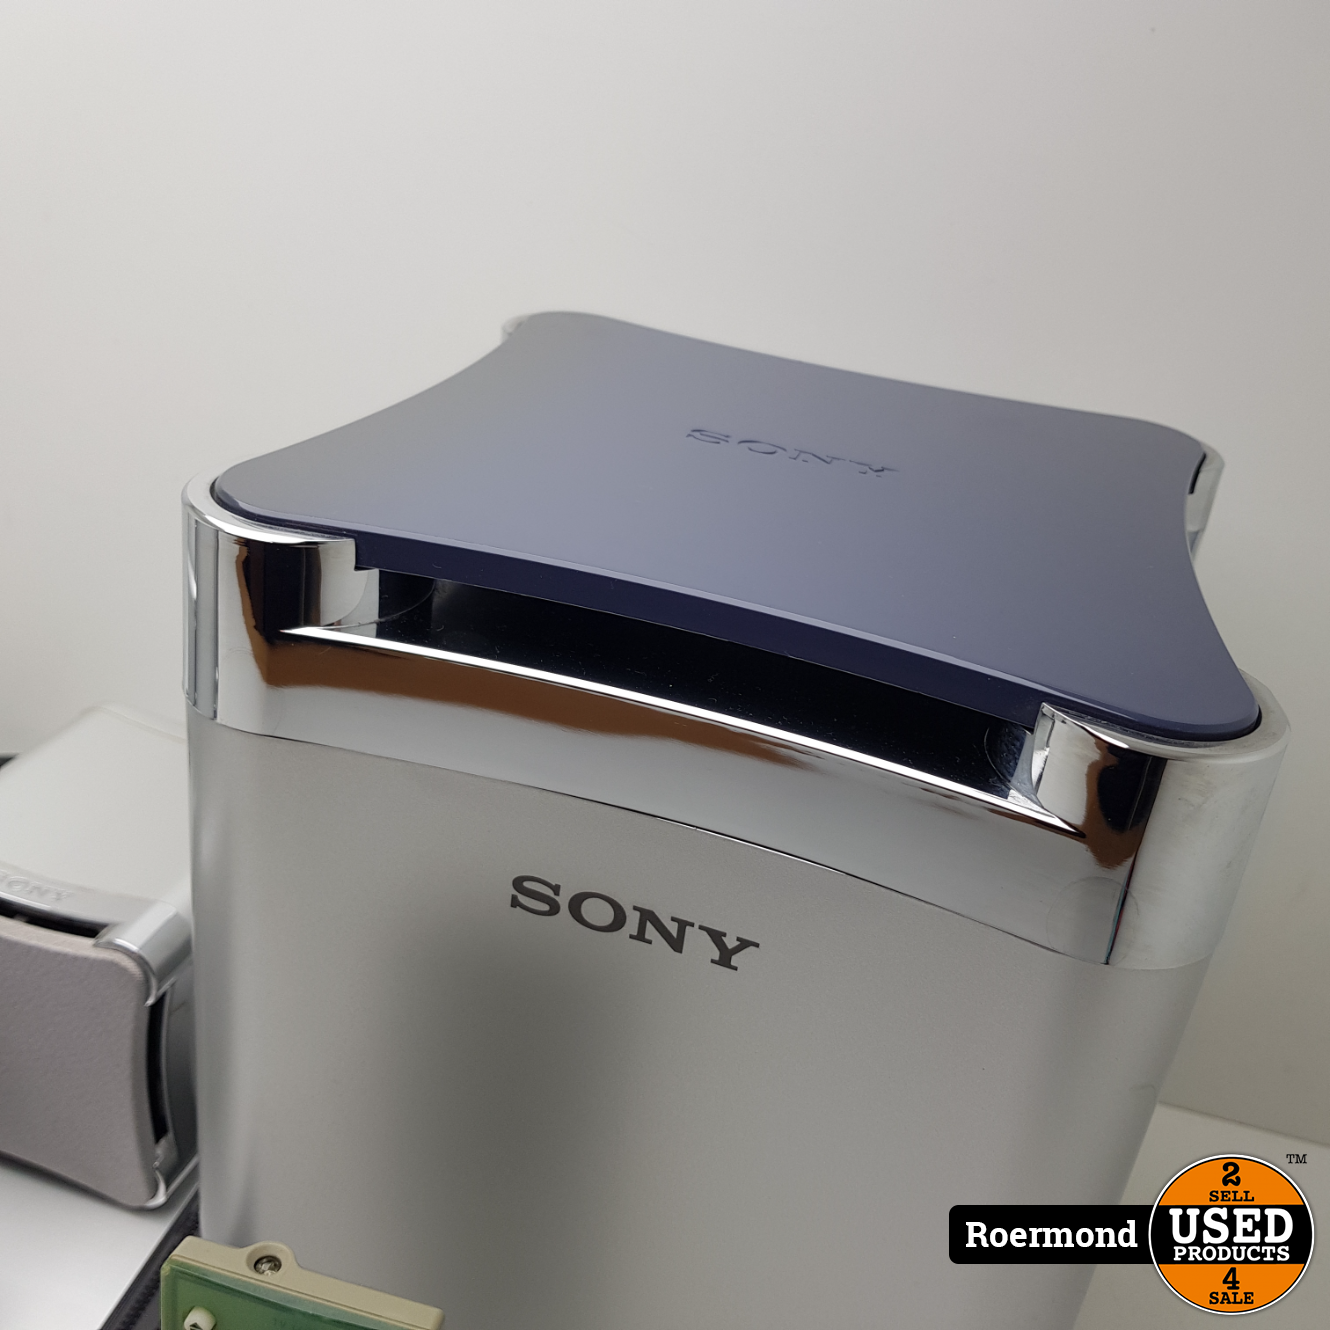 Kraan straf Horen van Sony DAV-S550 5.1 Home Cinema Set | Refurbished - Used Products Roermond